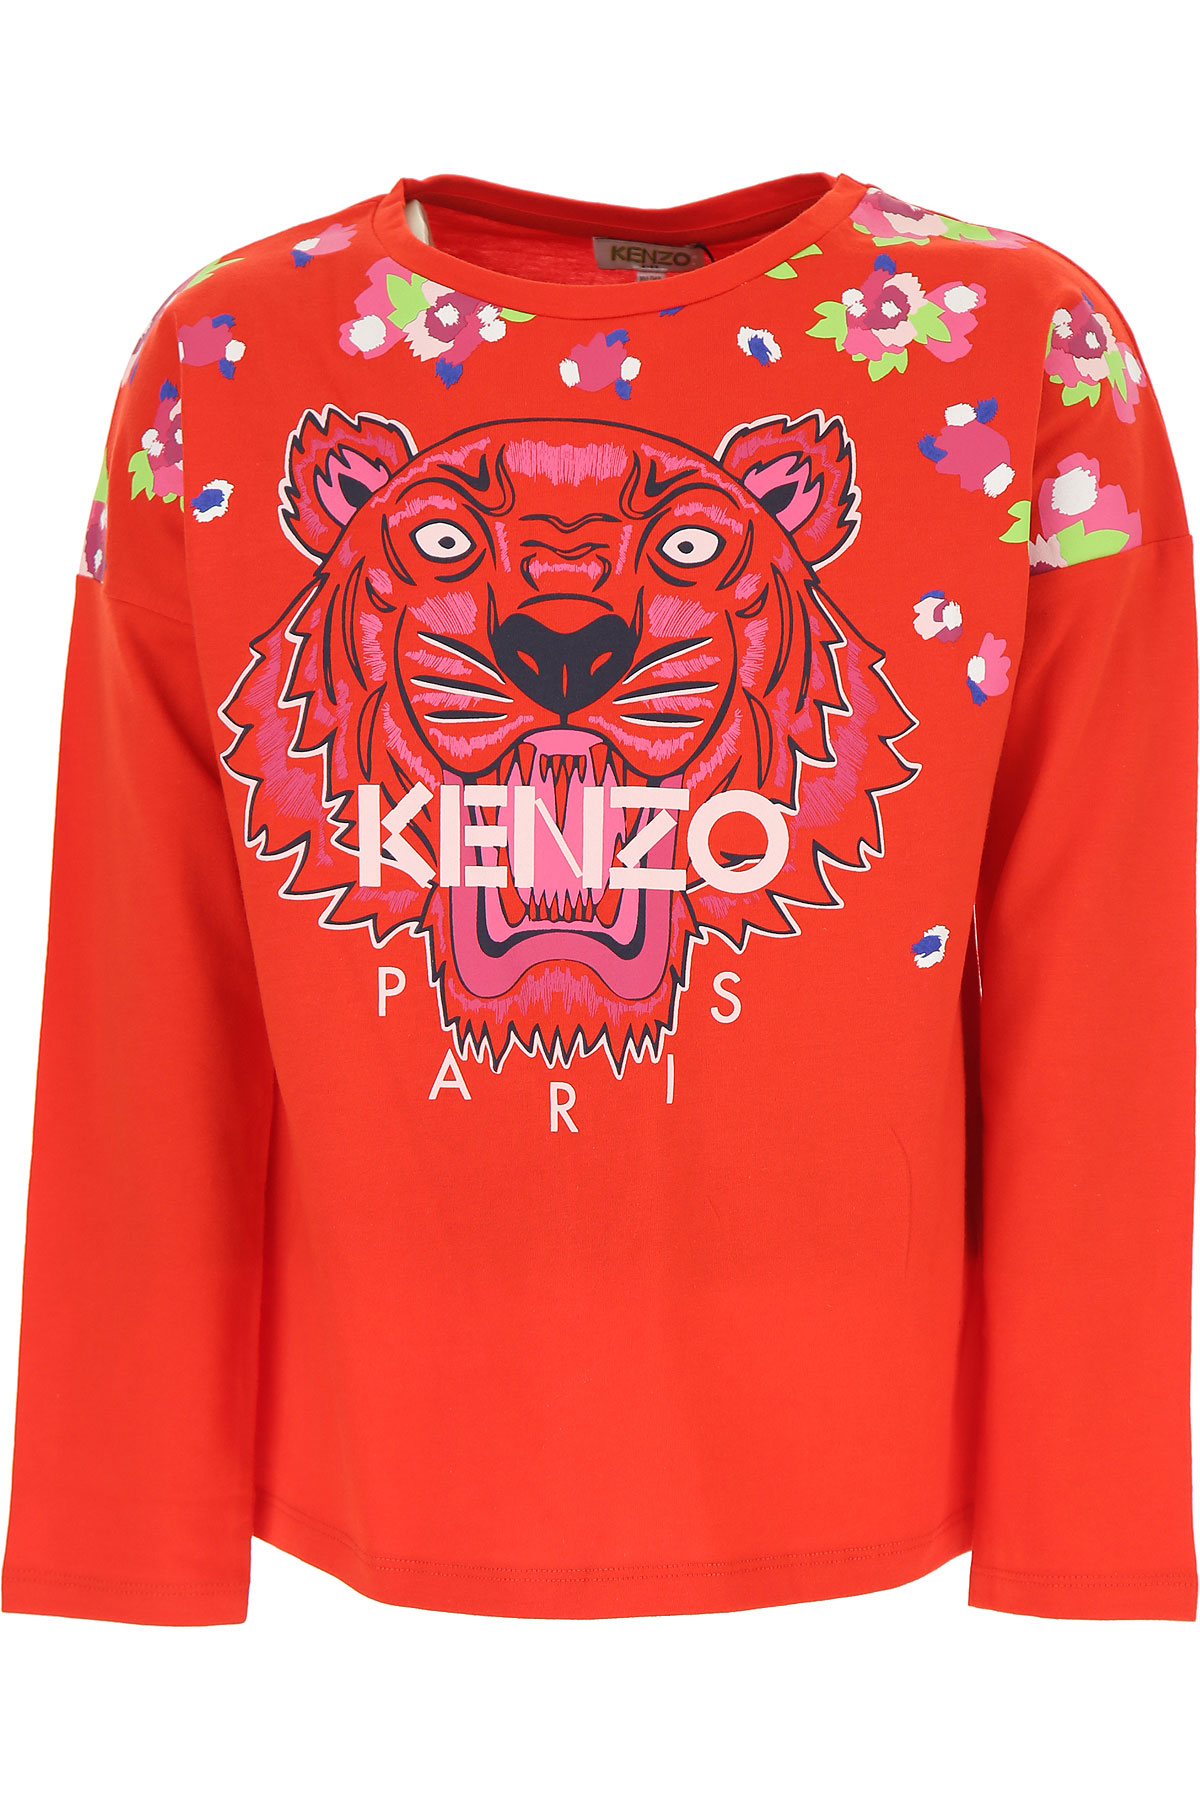 Kenzo Kinder T-Shirt für Mädchen Günstig im Sale, Rot, Baumwolle, 2017, 10Y 12Y 14Y 2Y 3Y 4Y 6Y 8Y